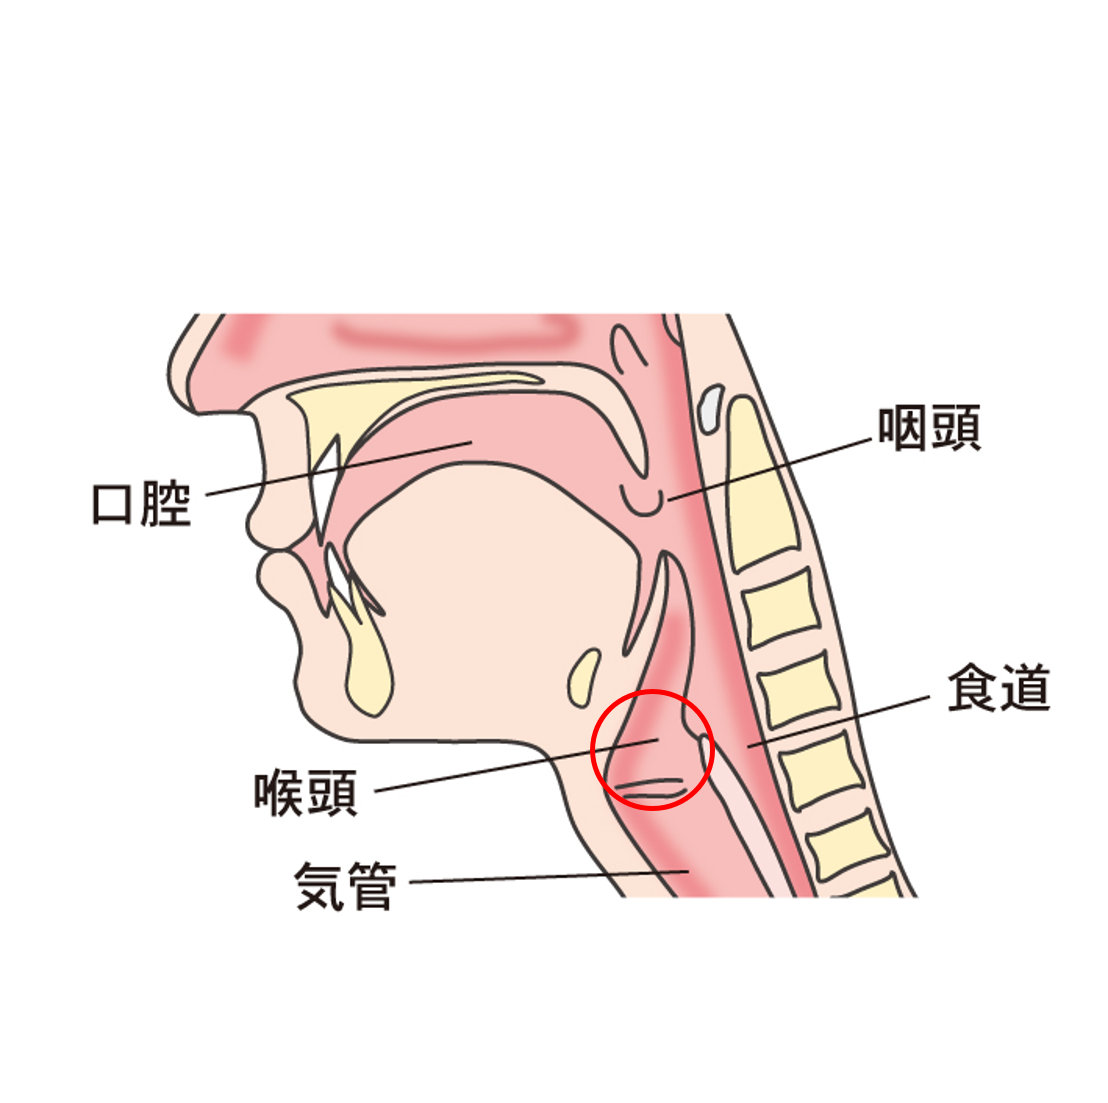 扁桃炎 咽頭炎 喉頭炎について 横浜市都築区のおおた耳鼻咽喉科